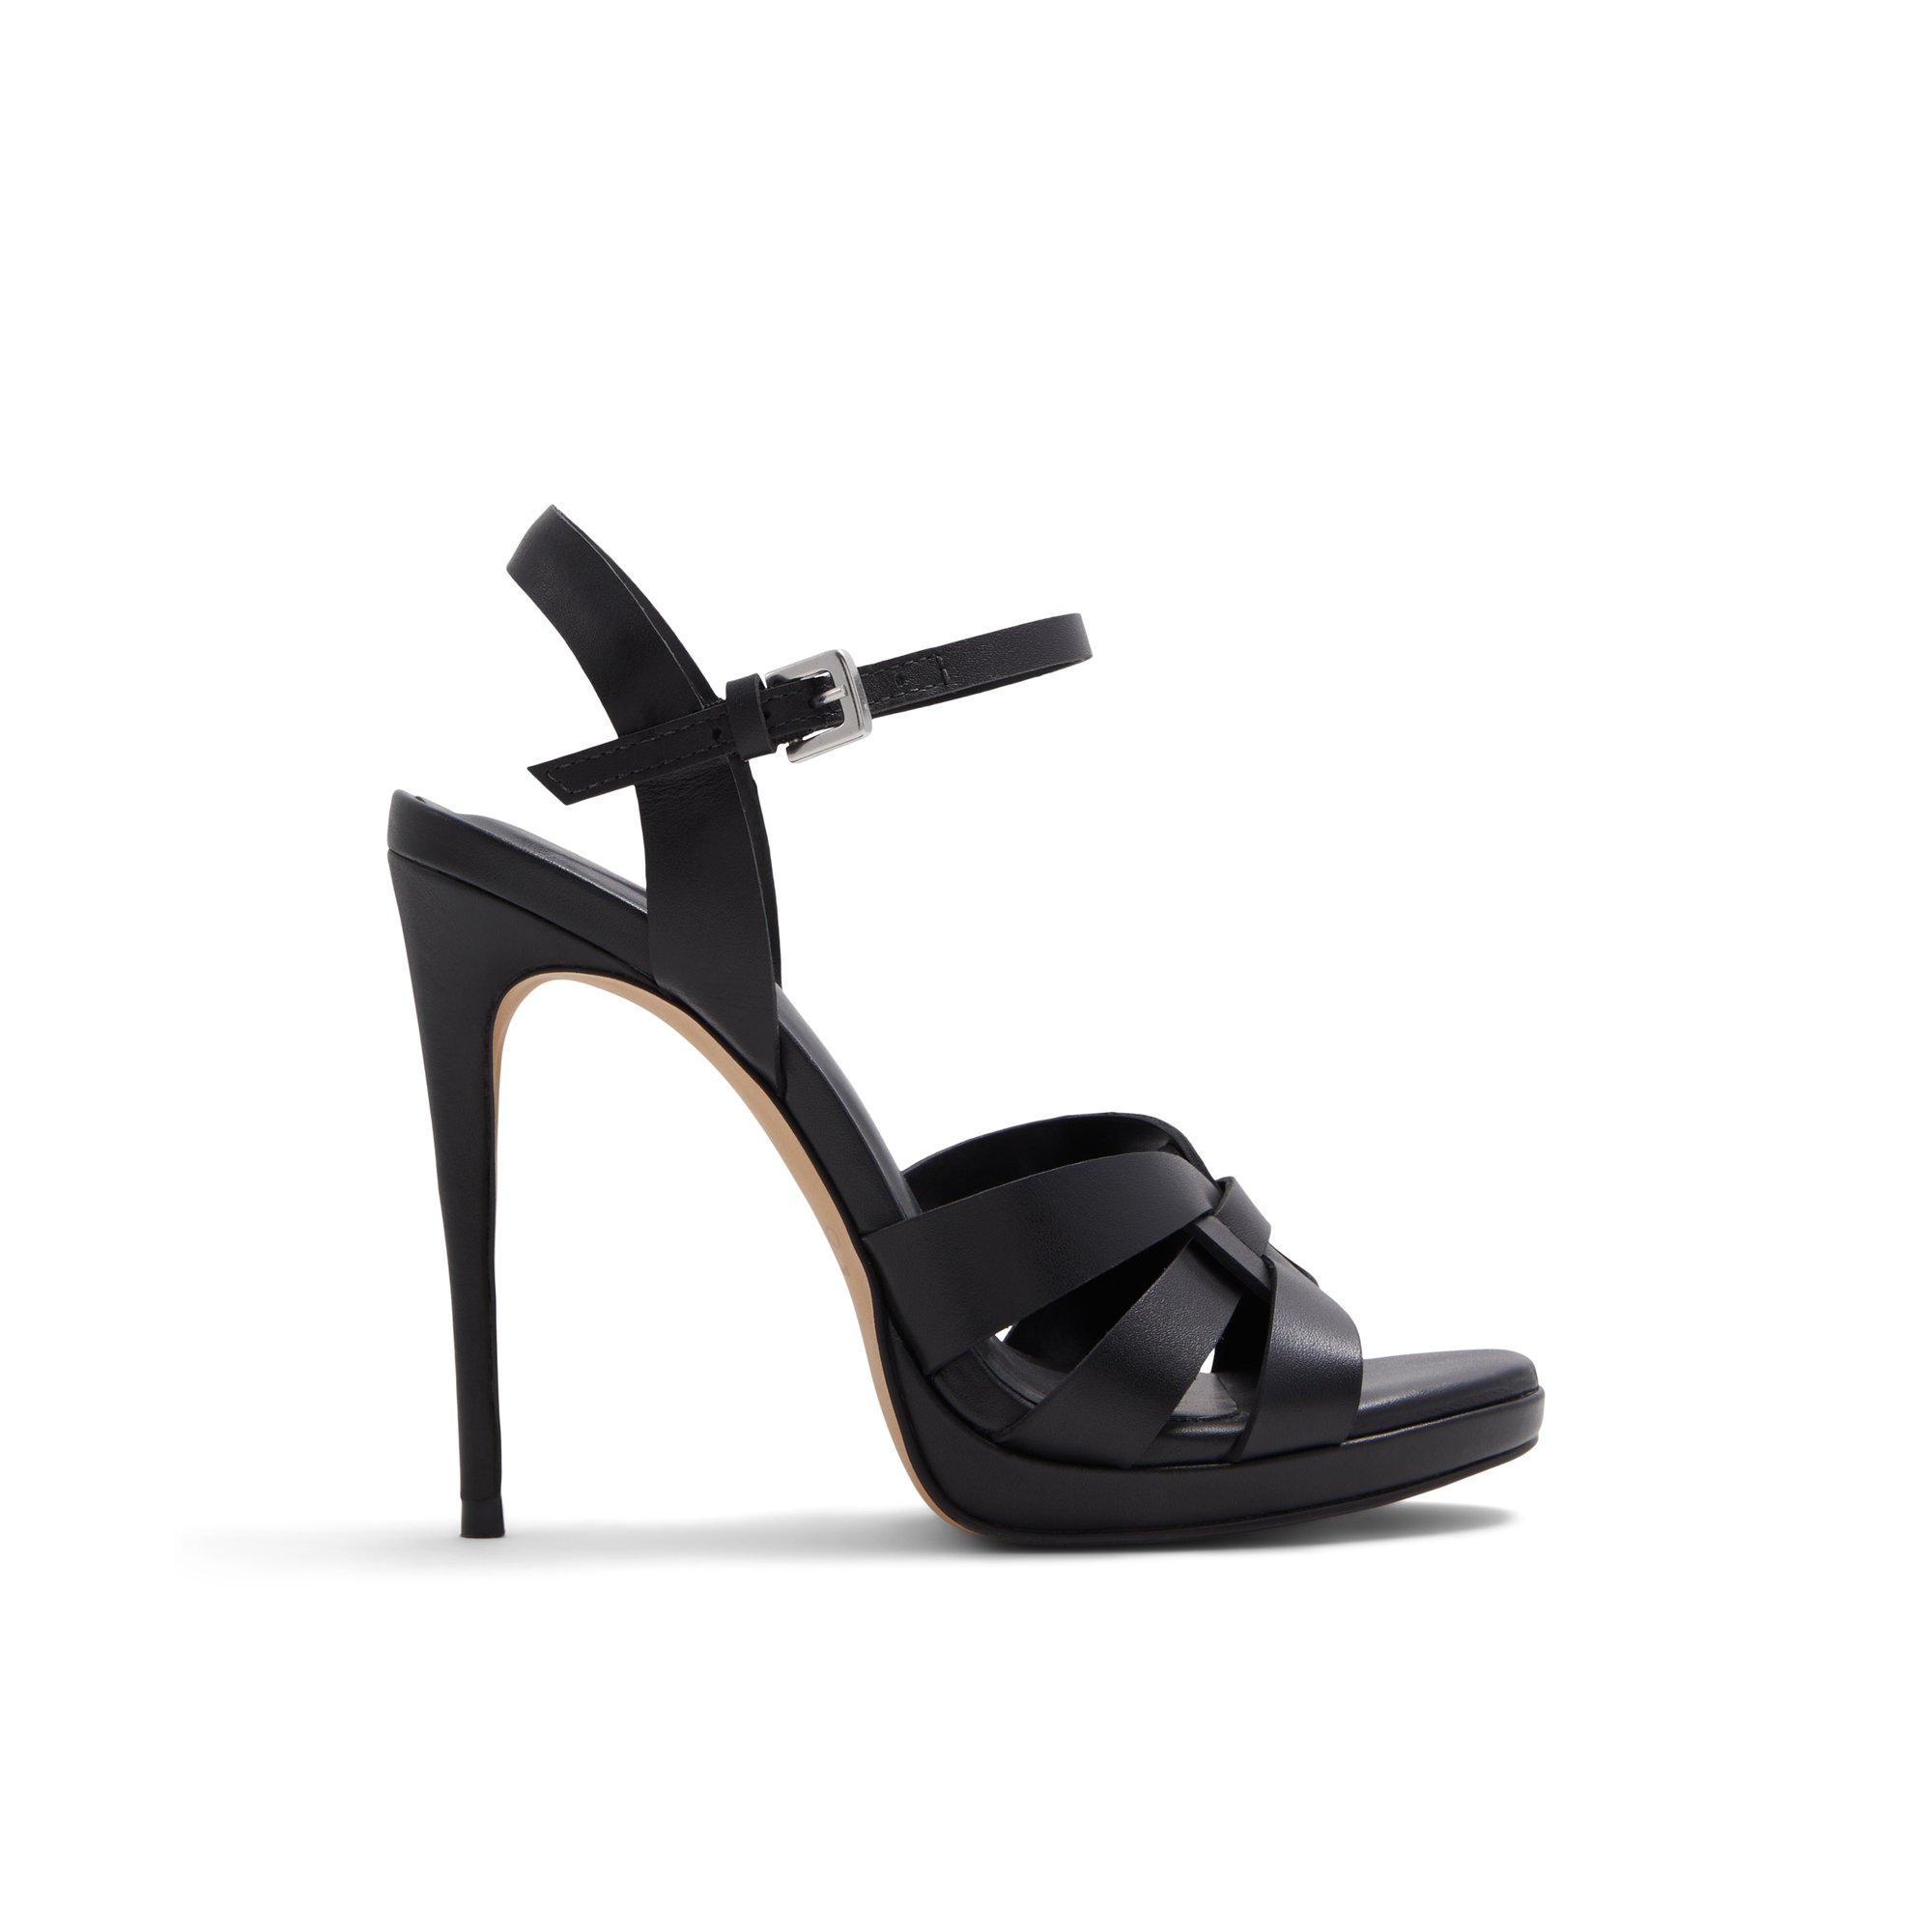 ALDO Afaoni - Women's Sandals Strappy - Black